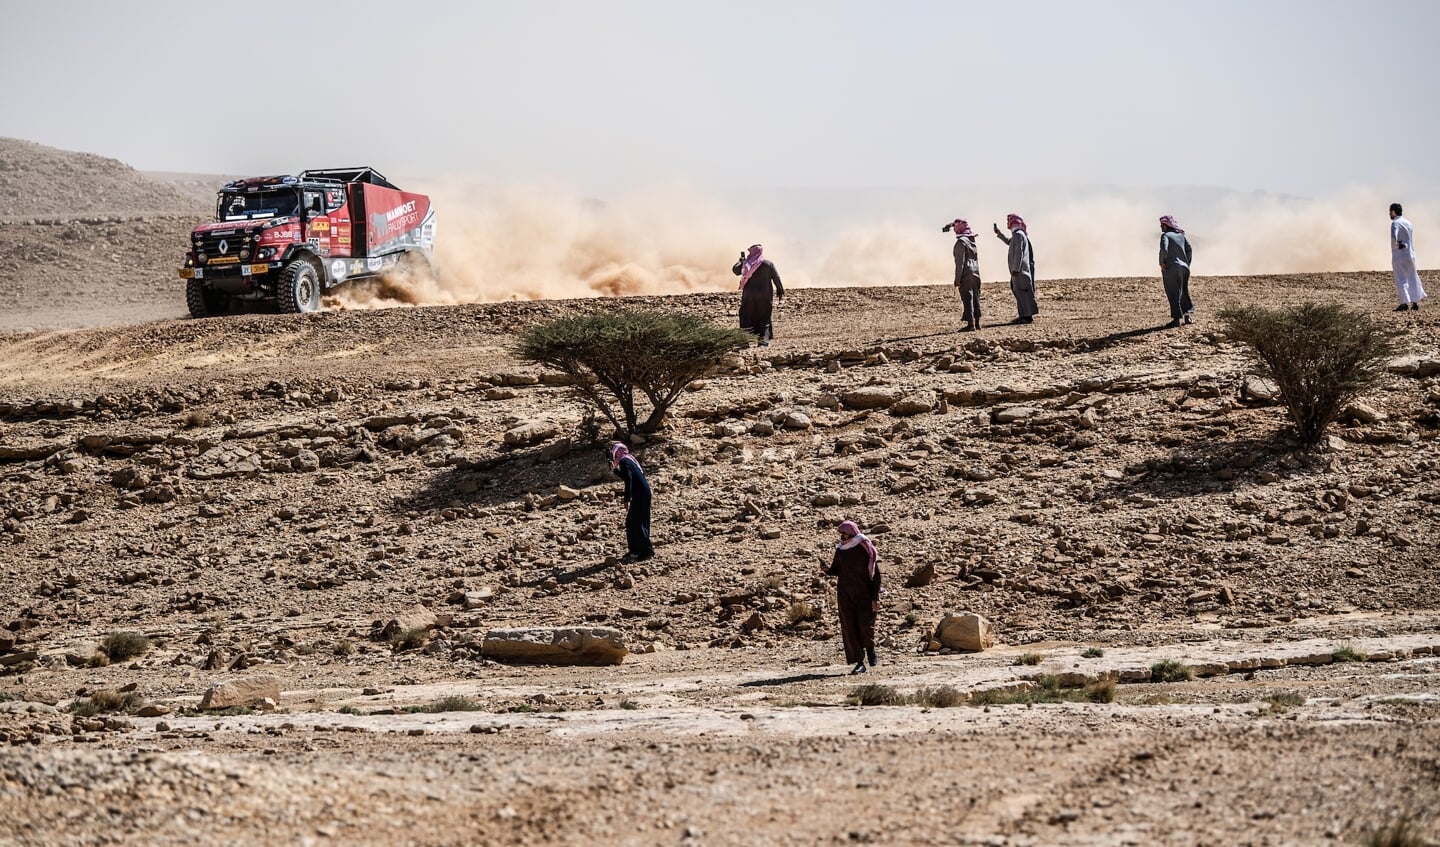 Het team van Mammoet Rallysport doet er alles aan om de finish te halen in de Dakar Rally.